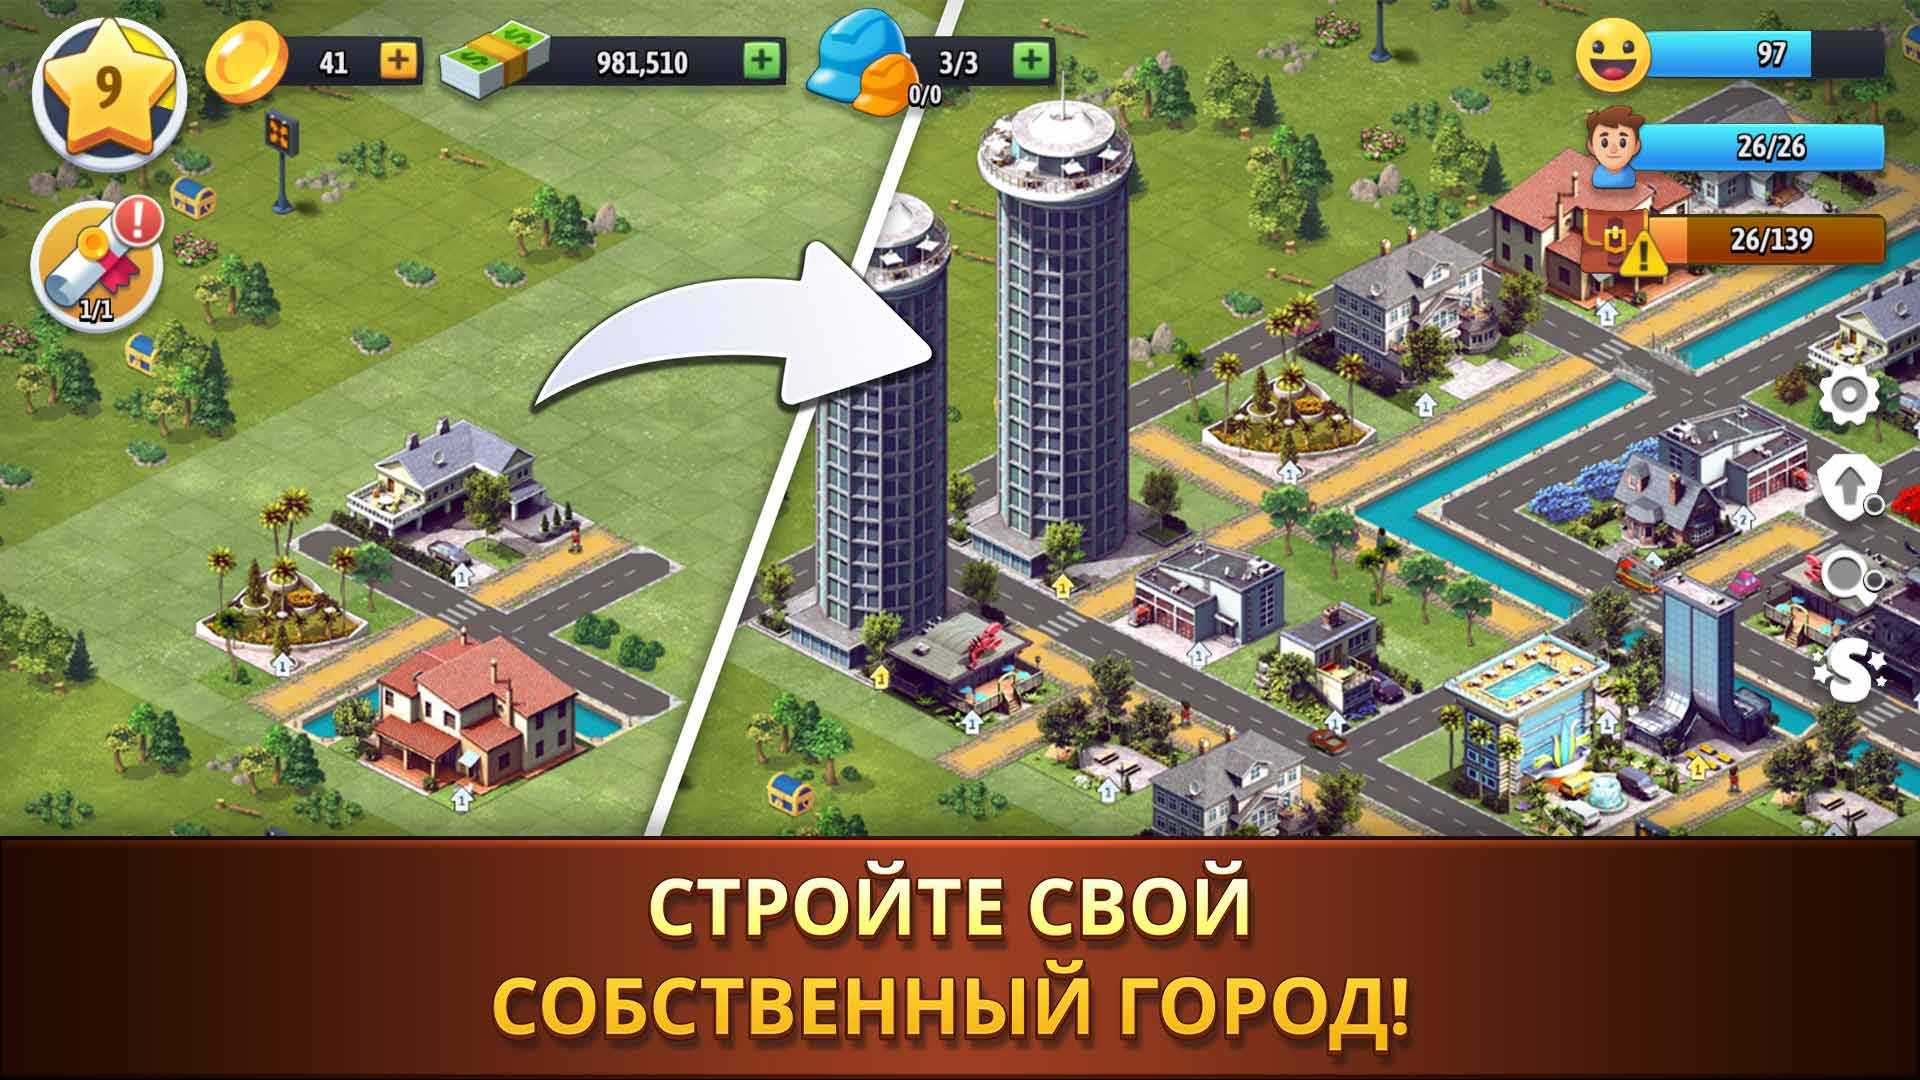 City island 1. Игра в города. Градостроительные игры на андроид. Симулятор города на андроид. Градостроительный симулятор на андроид.